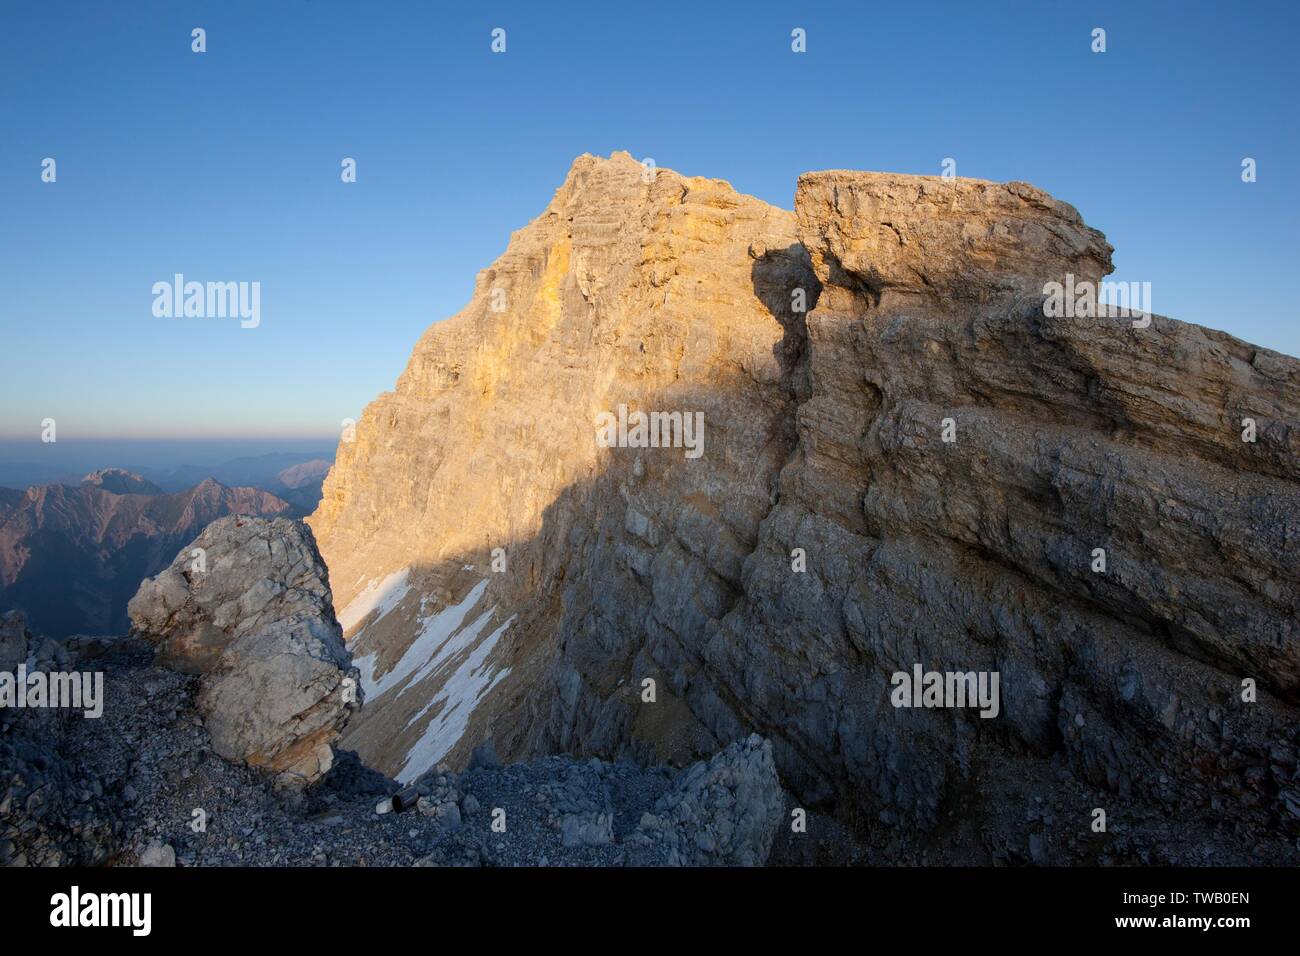 Austria, Tyrol, Karwendel Mountains, Birkkarspitze (peak) in the sunset light. Stock Photo